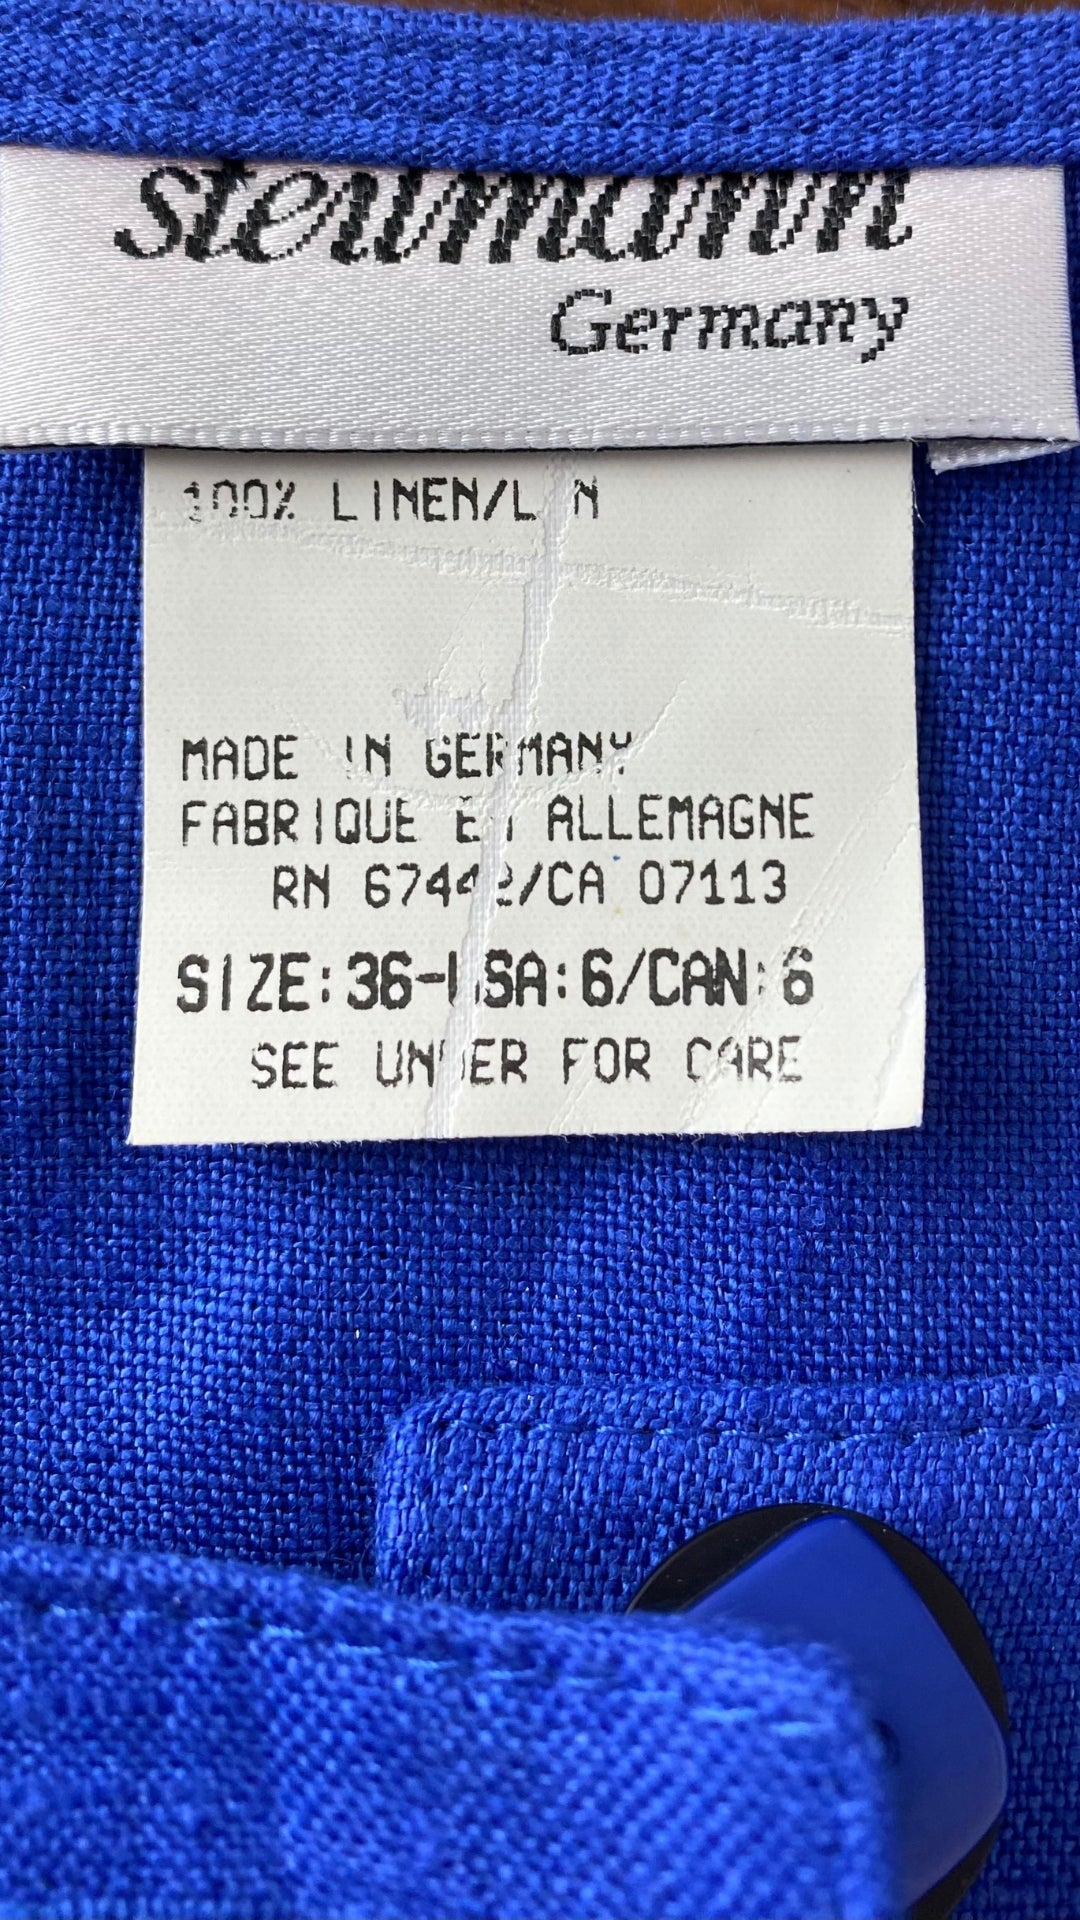 Robe bleue boutonnée en lin Steilmann, taille 6 (xs/s). Vue de l'étiquette de marque et composition.